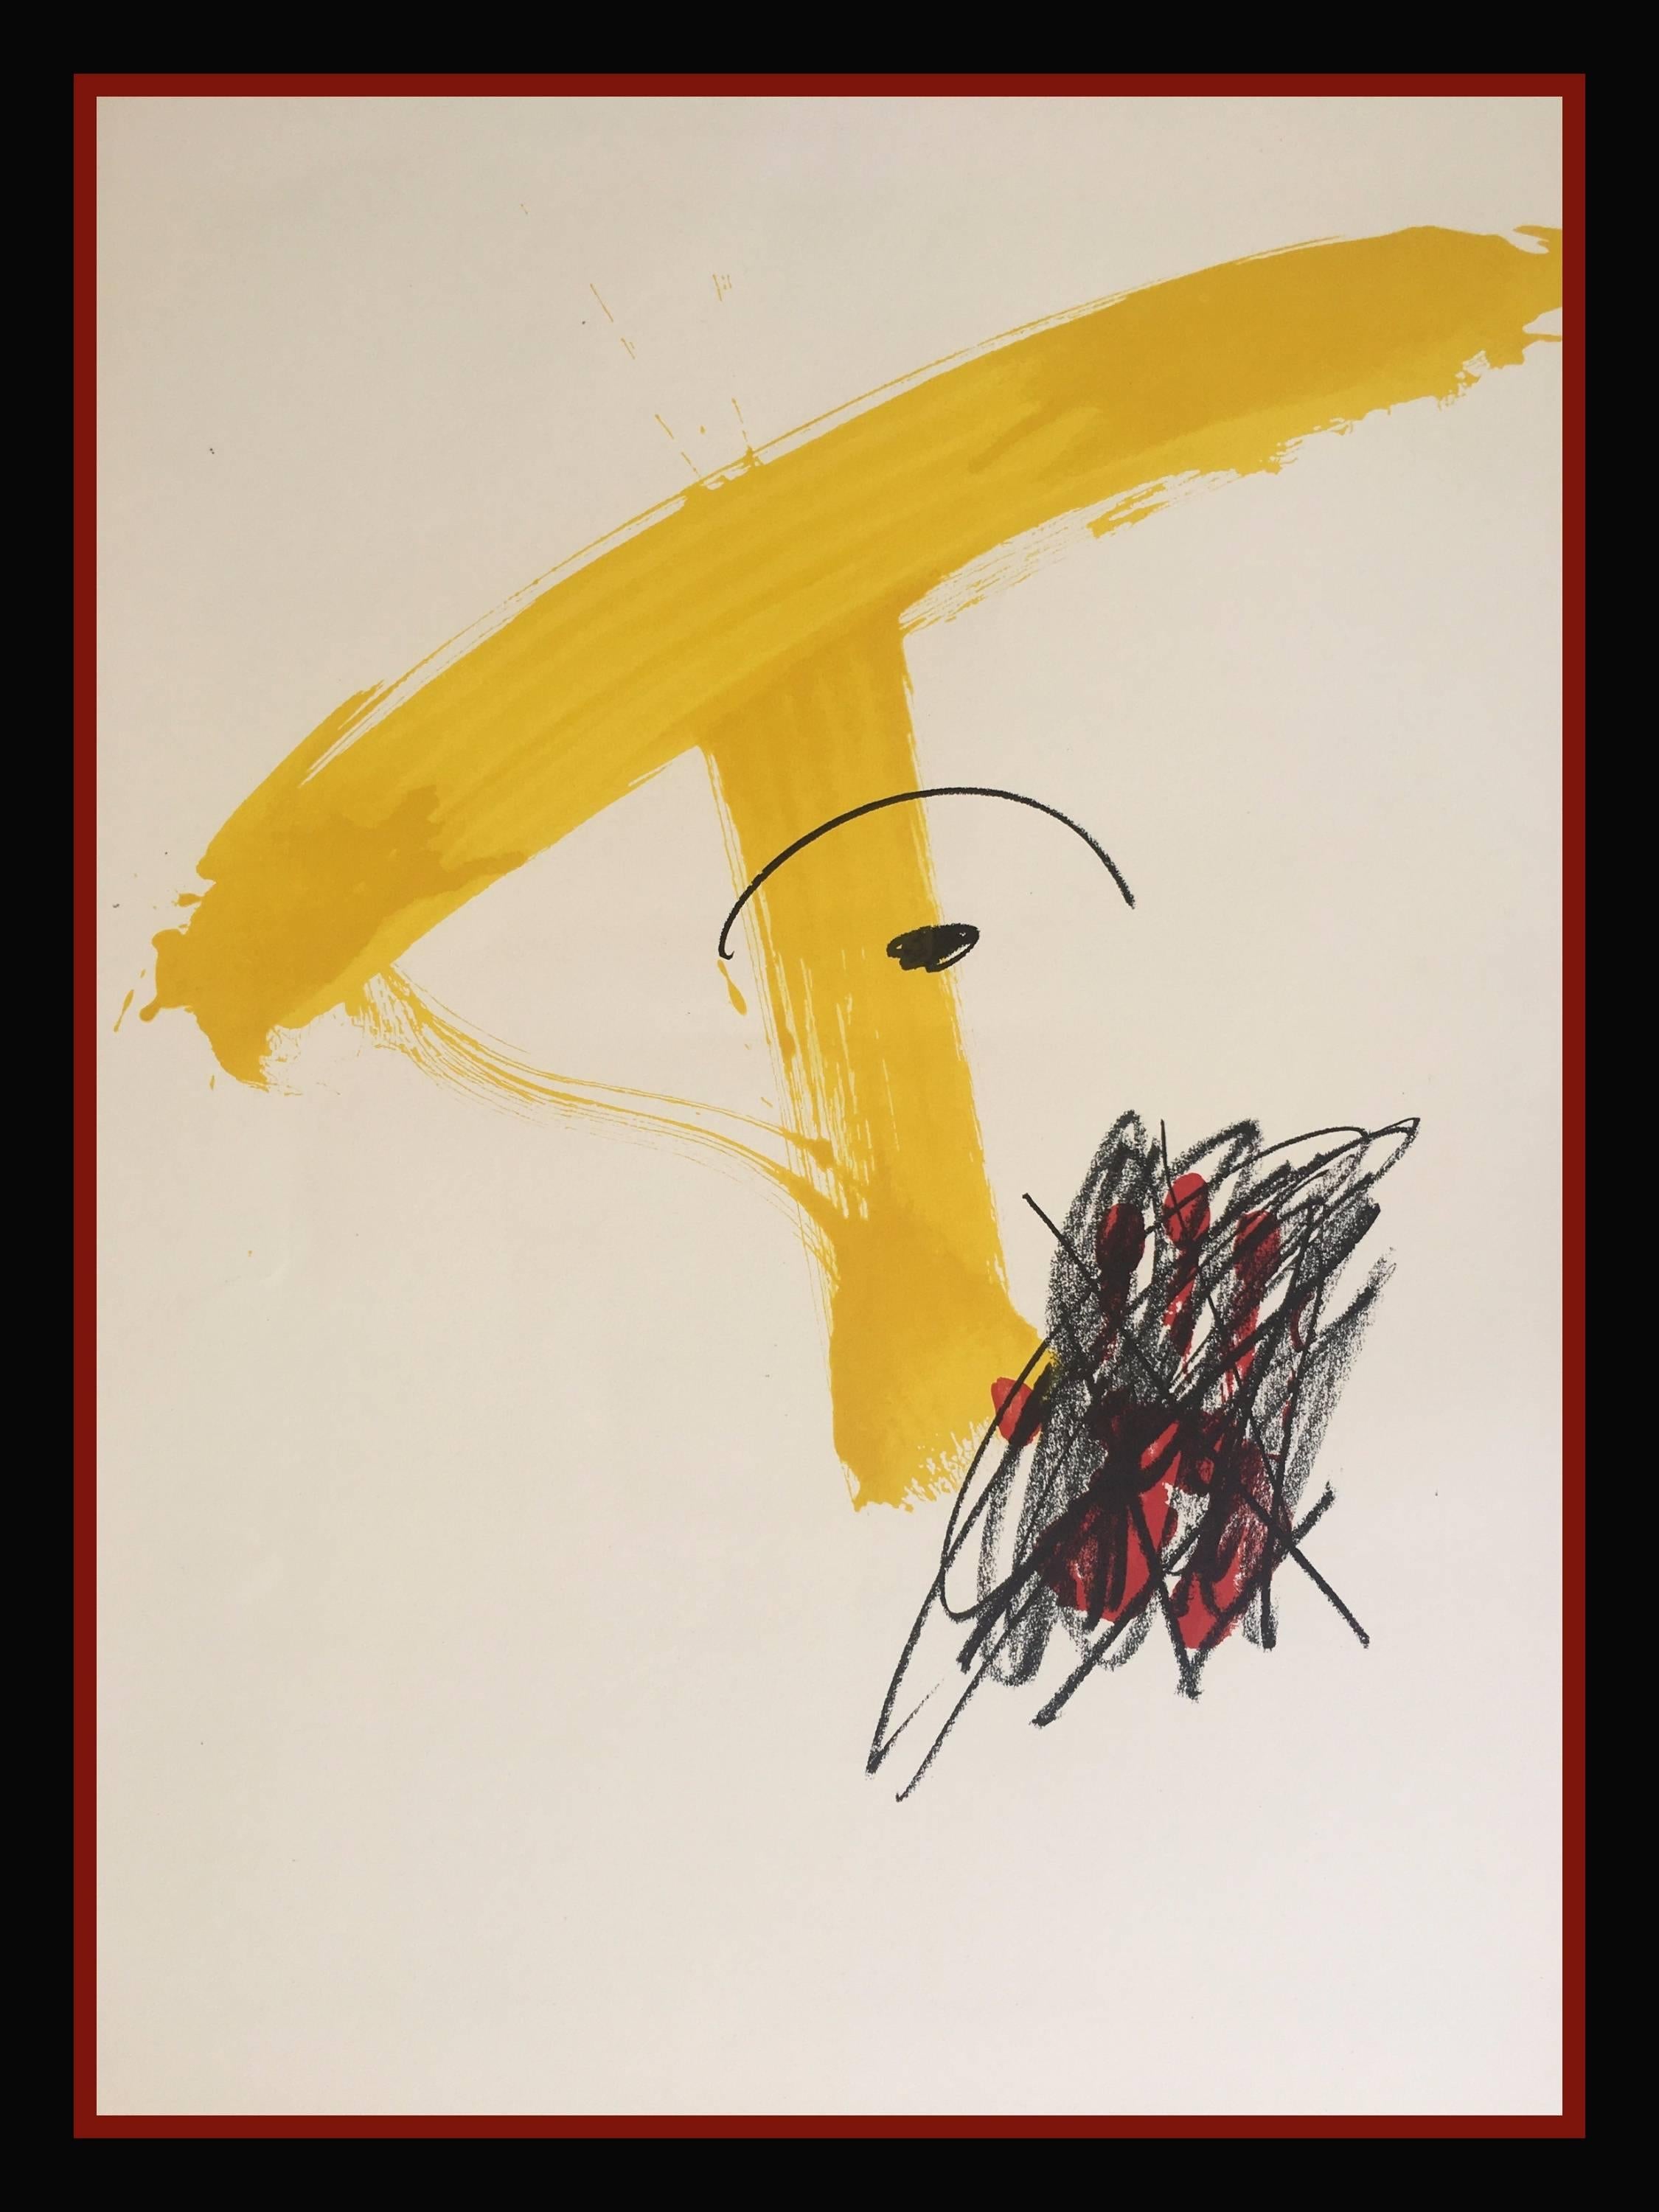 Abstract Print Antoni Tàpies - Tapies 93  Noir  Jaune  Vertical. Peinture de lithographie originale de 1974